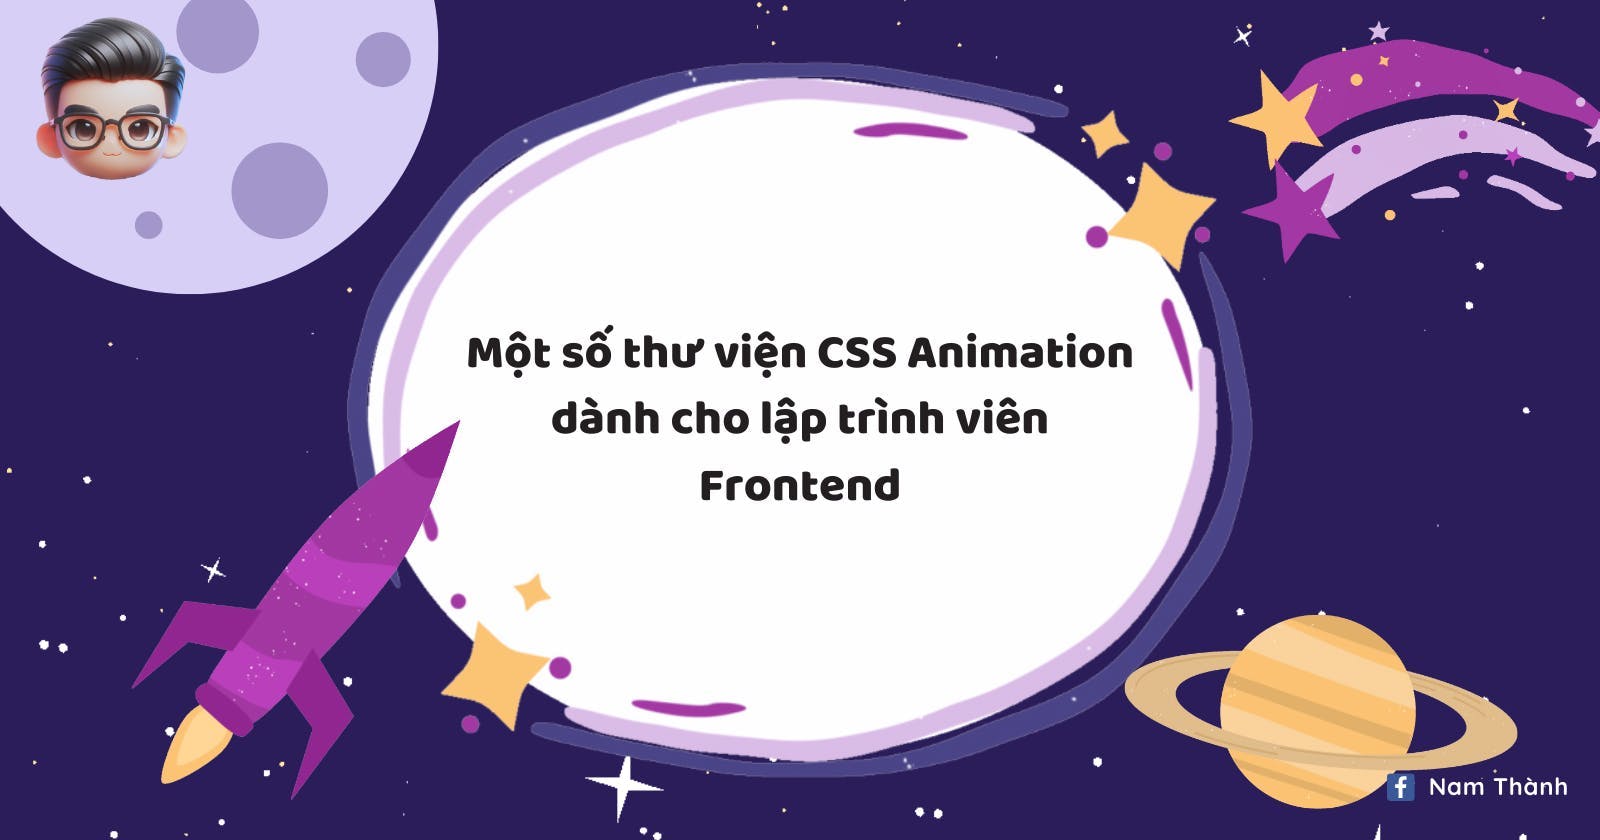 Một số thư viện CSS Animation dành cho lập trình viên Frontend